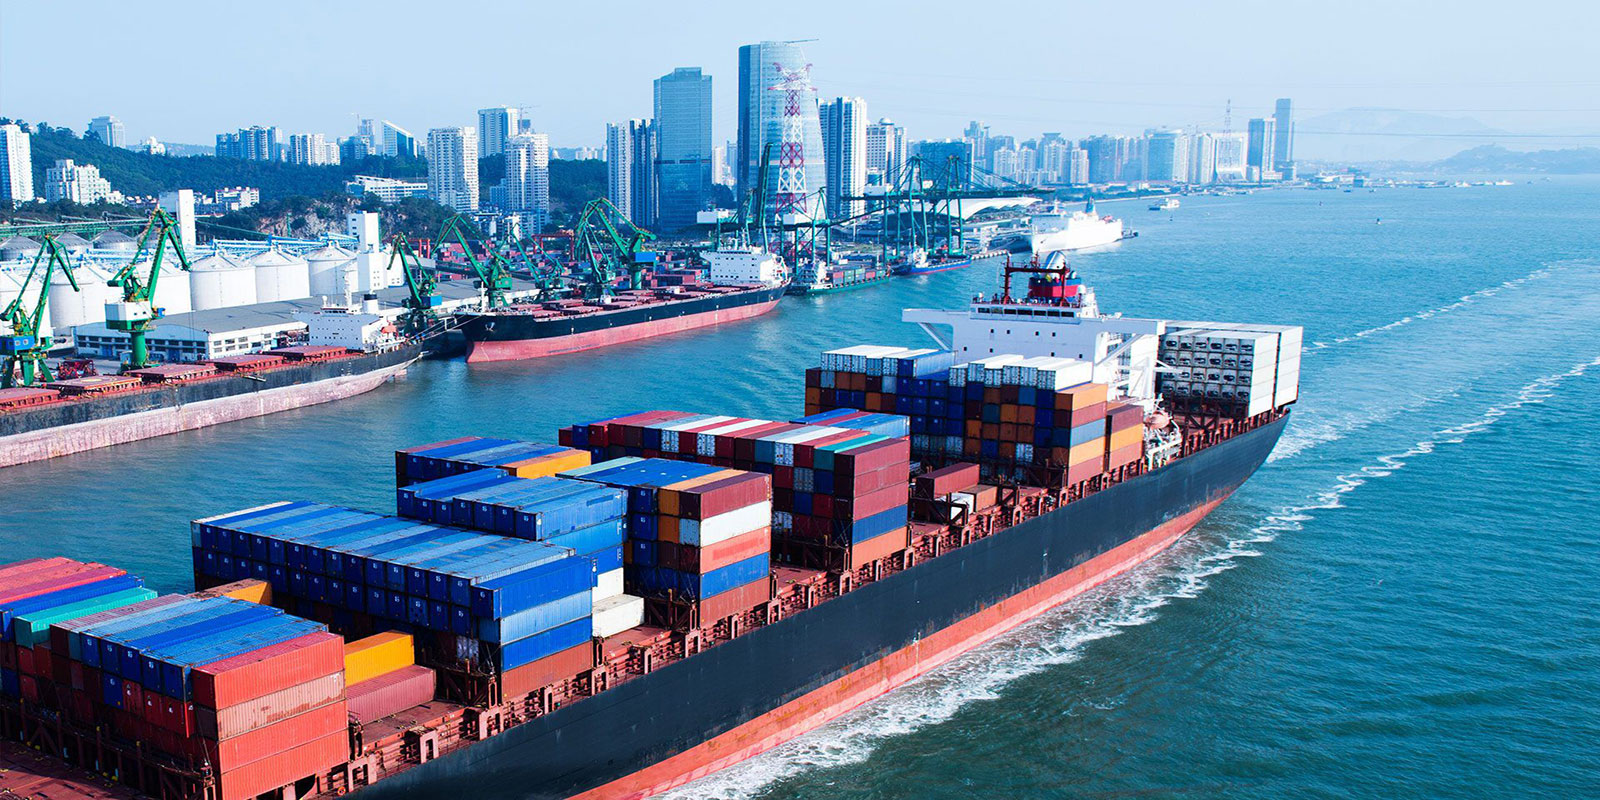 Стоимость услуг судов в порту выросла на 6-30%